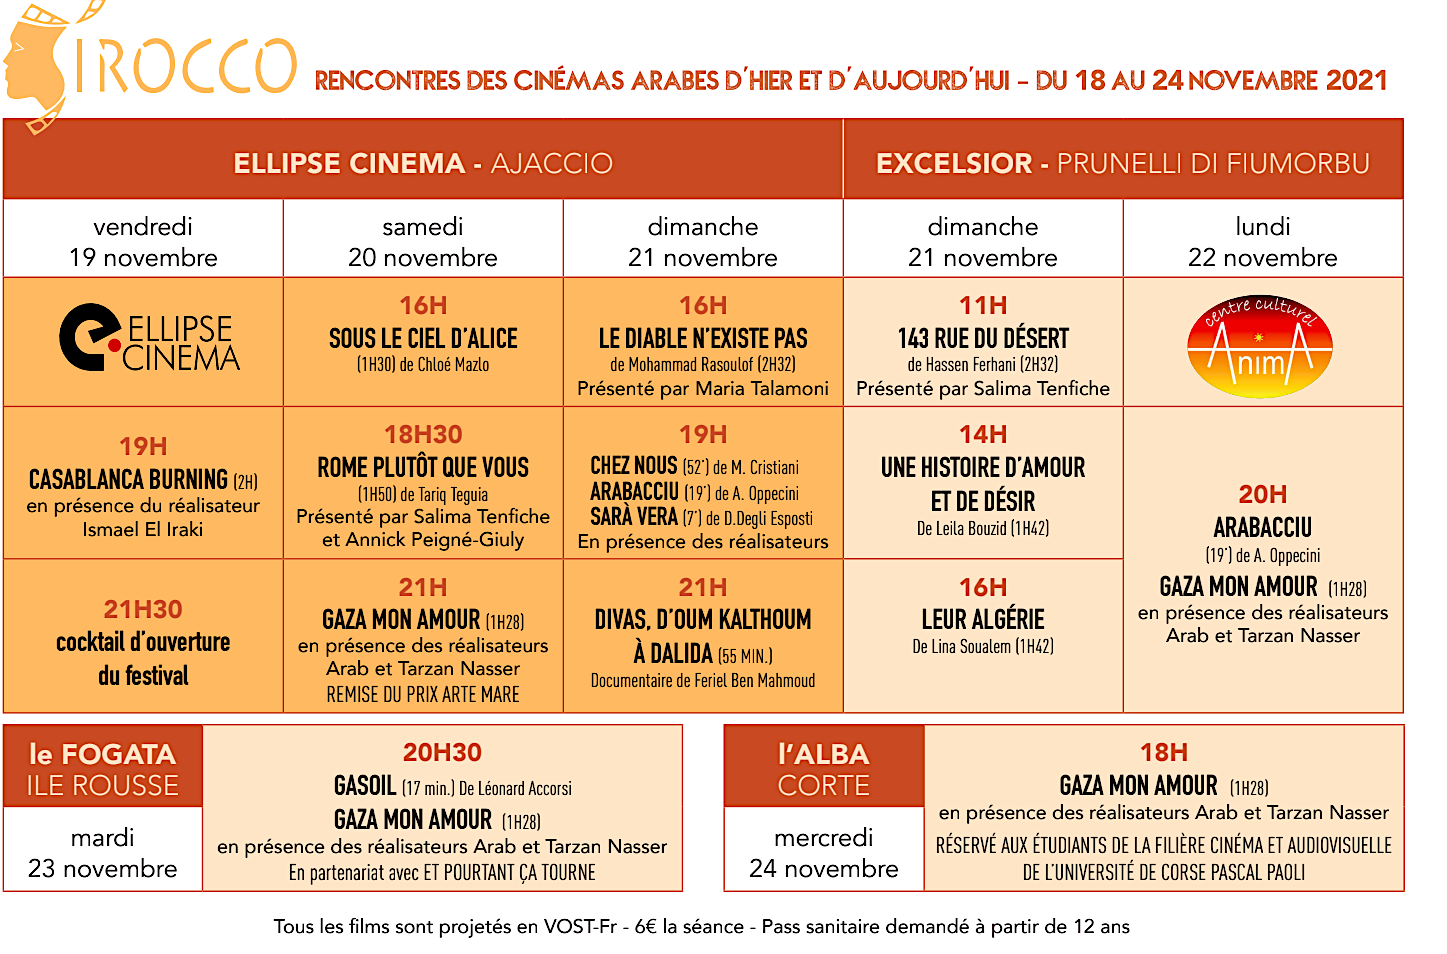  "Sirocco", le festival des rencontres des cinémas arabes d'hier et d'aujourd'hui, sur toute la Corse